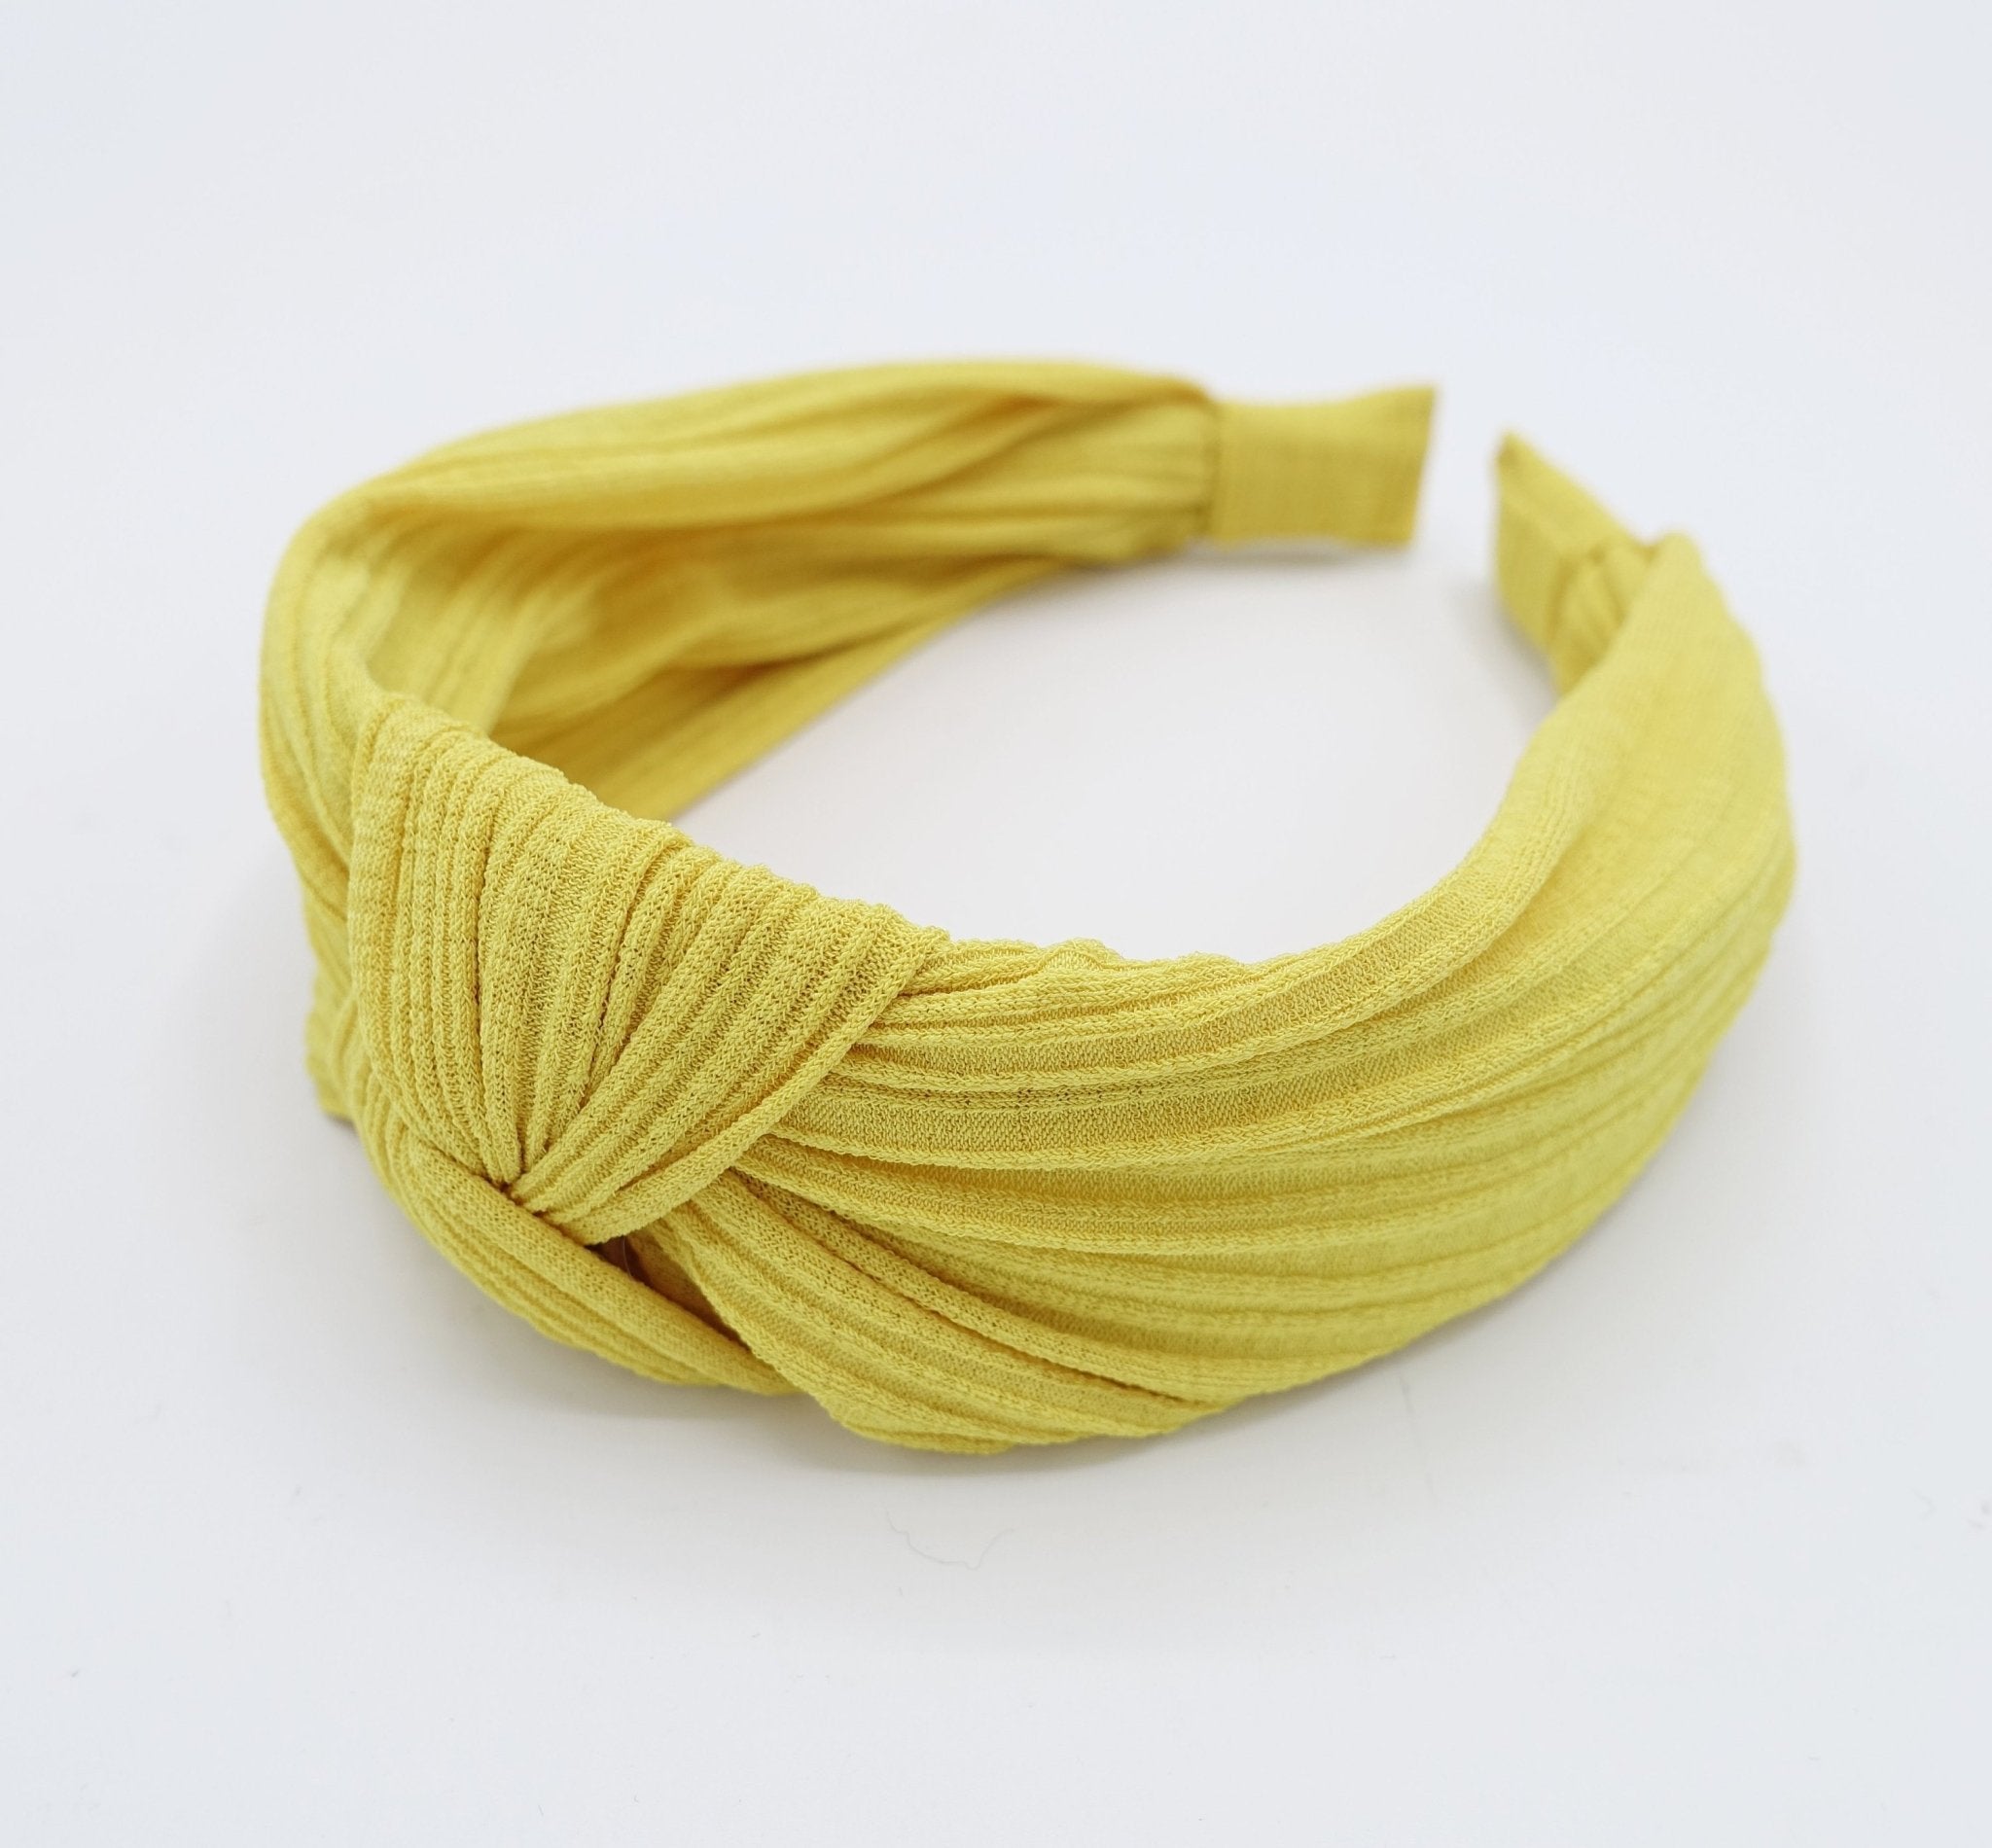 VeryShine thin stretch chiffon knit knotted headband